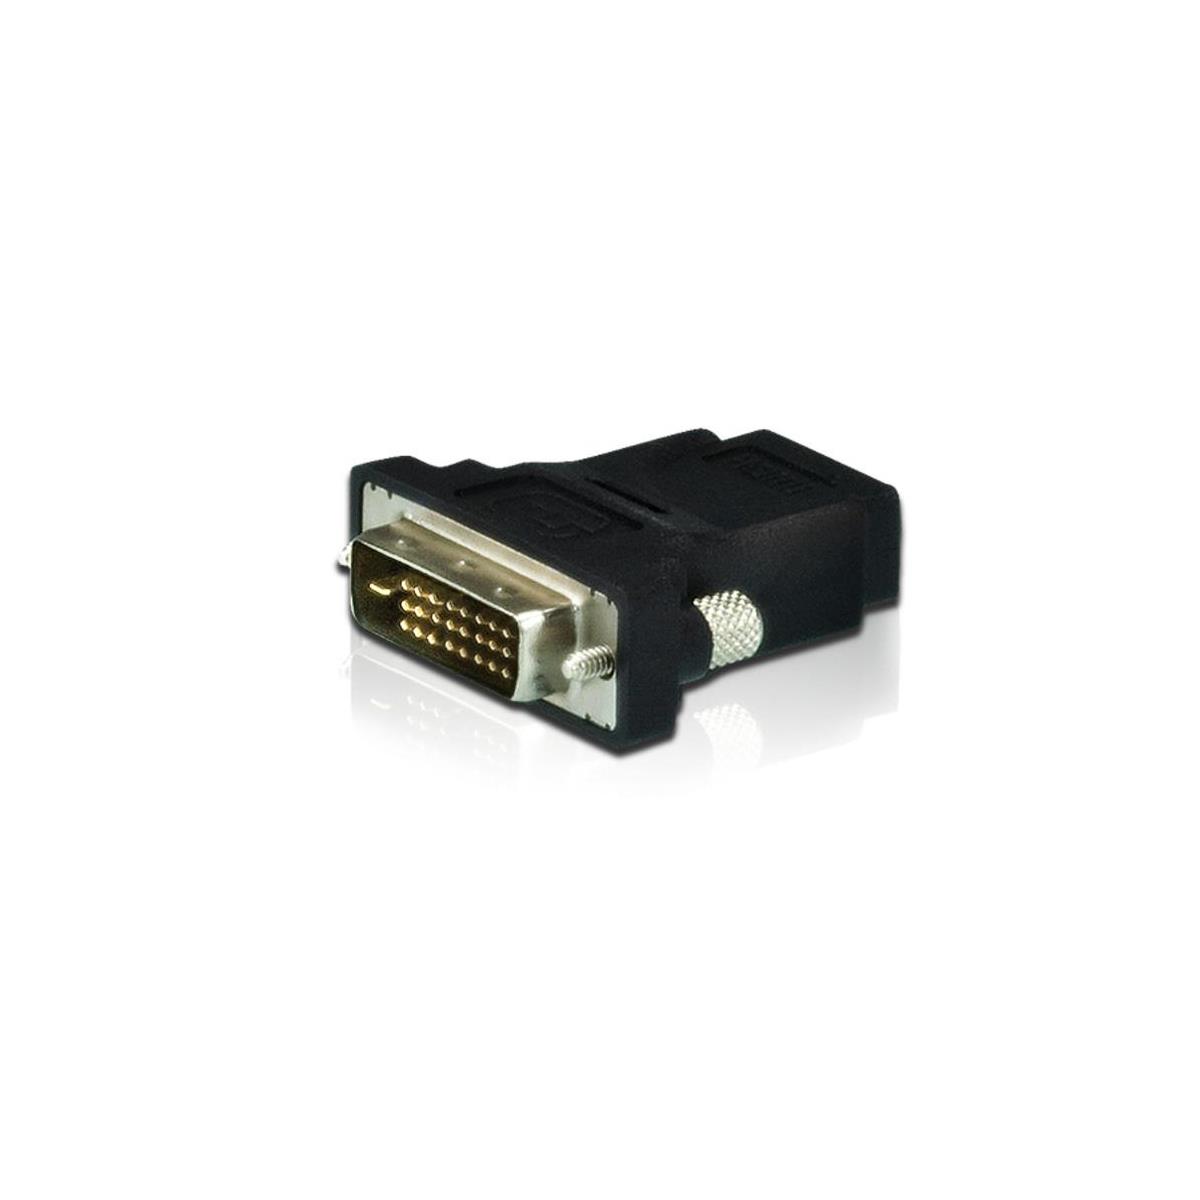 

Aten 2A-127G DVI to HDMI Video Converter